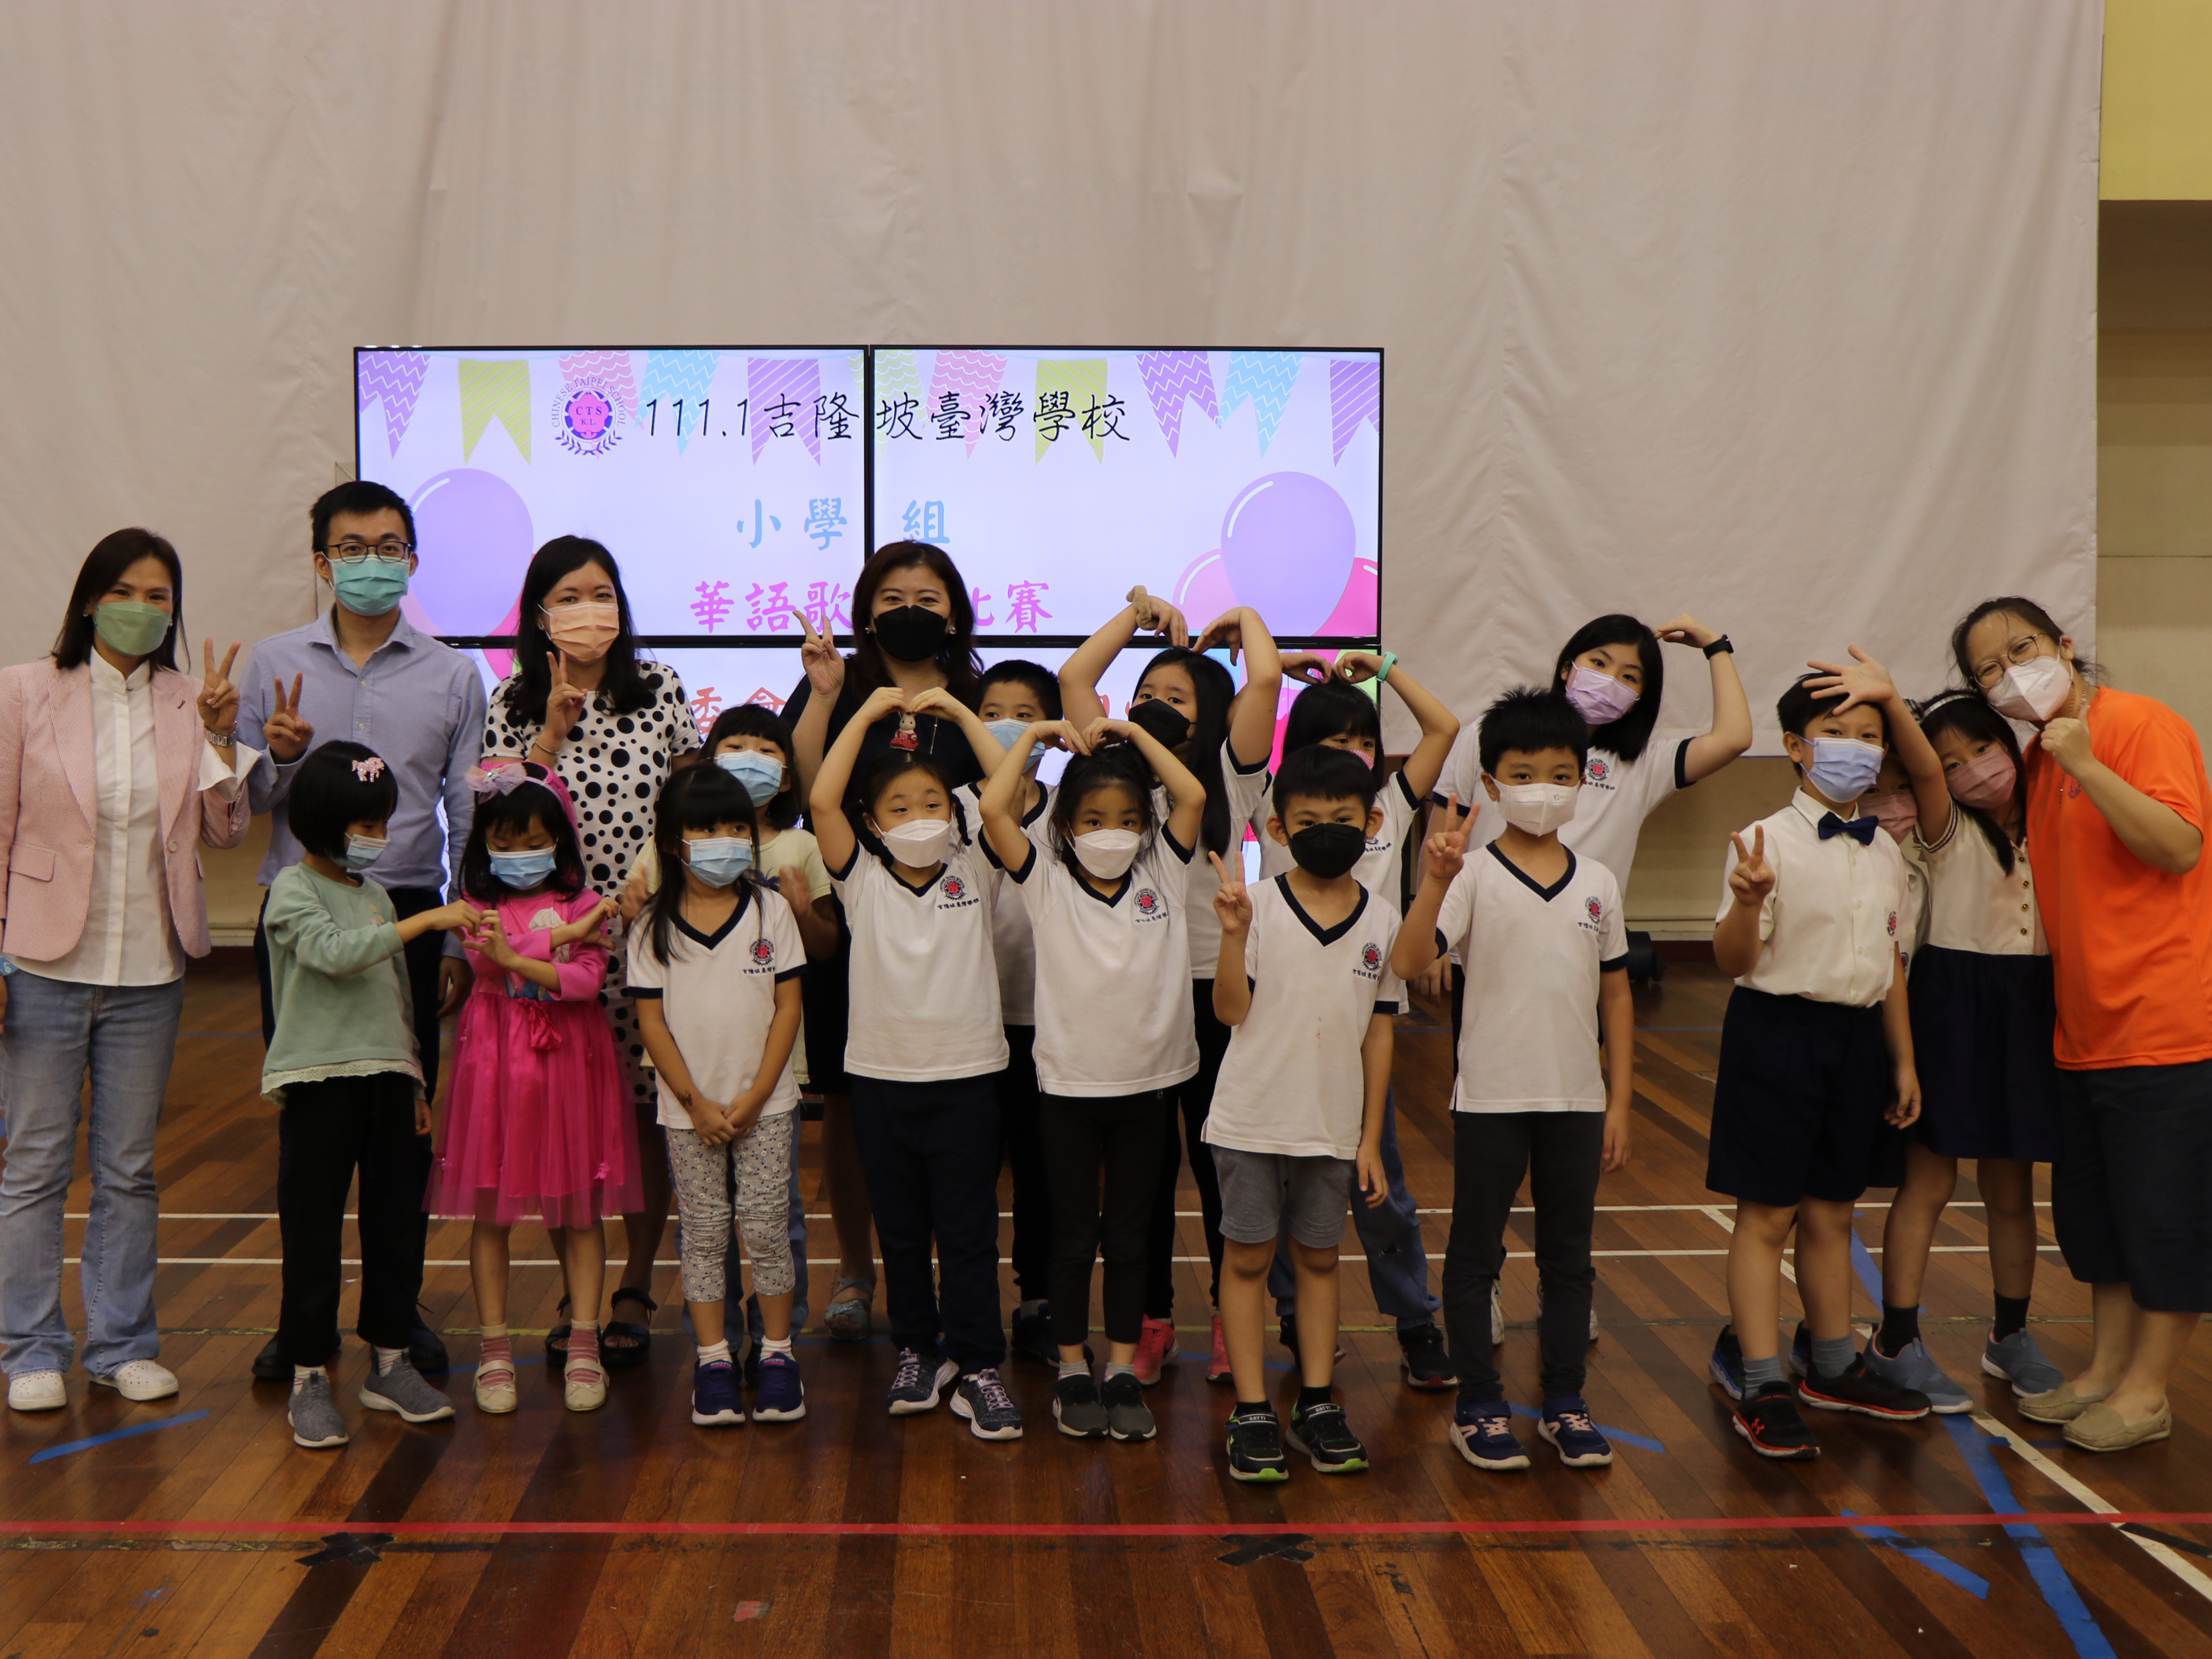 吉隆坡臺灣學校111學年度第二屆校内華語歌唱比賽圖片